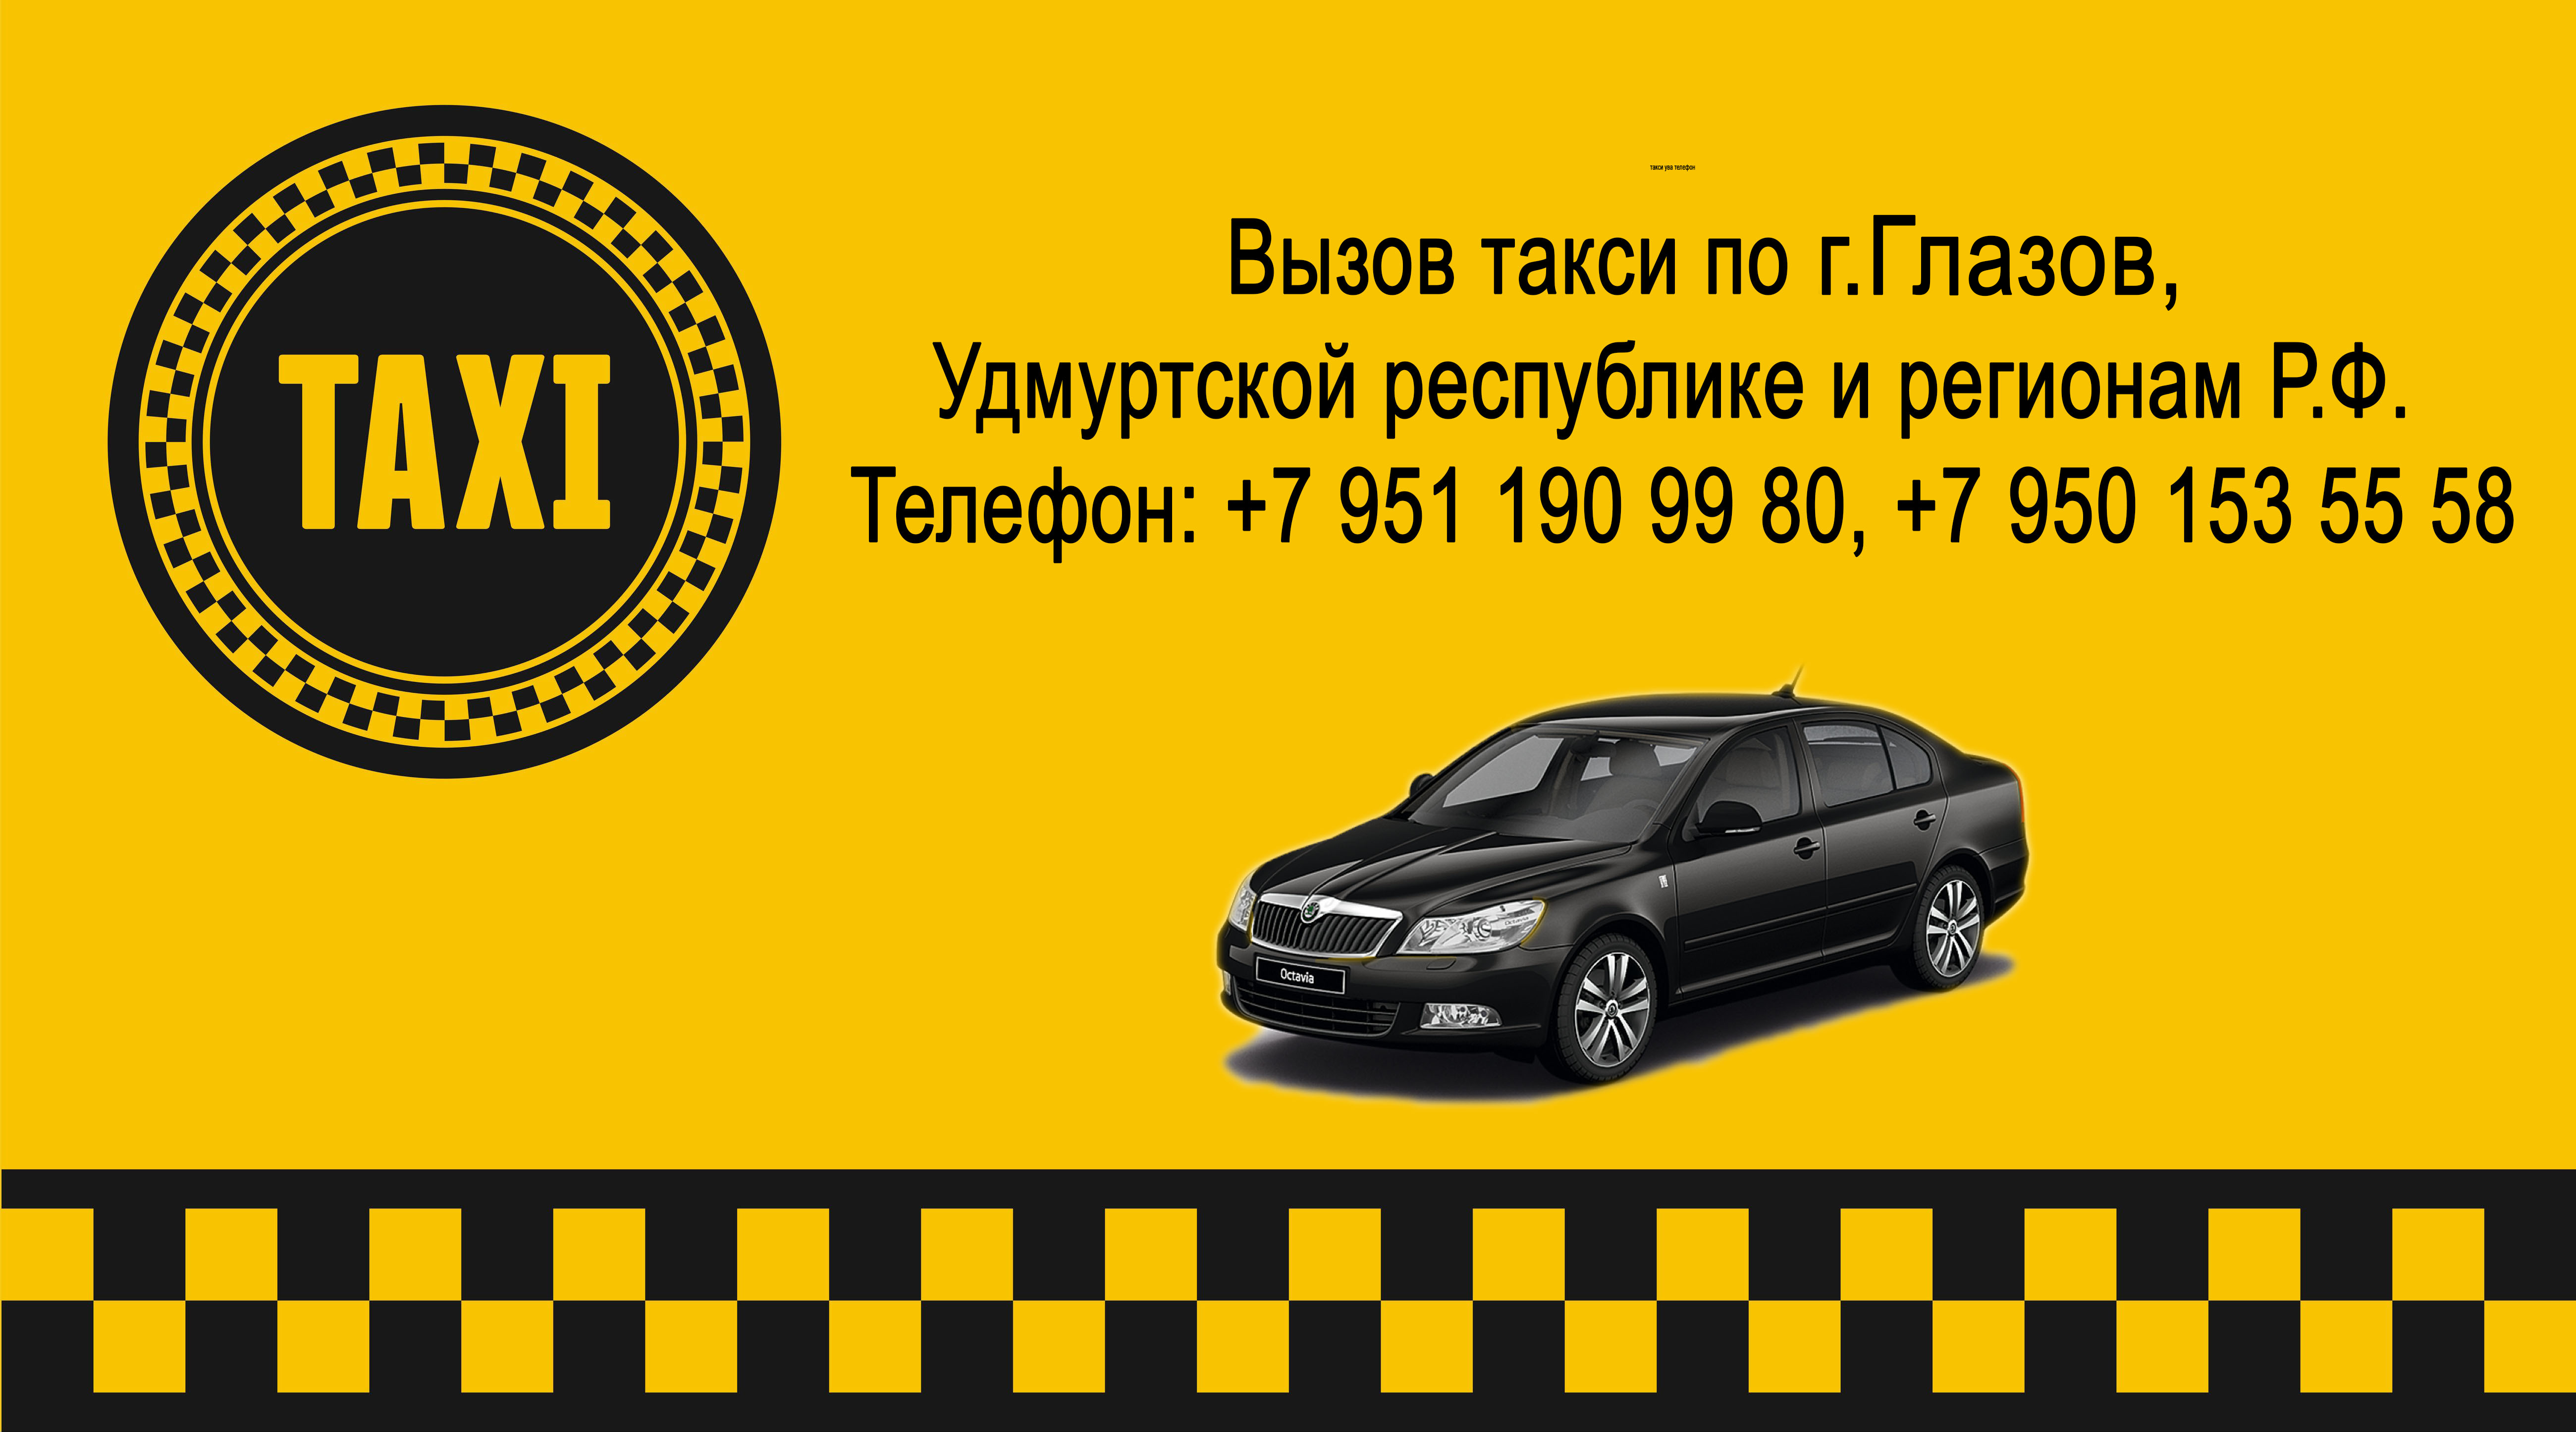 Номер такси пенза дешевое. Номер такси. Номера таксистов. Такси Ува. Такси номер такси.